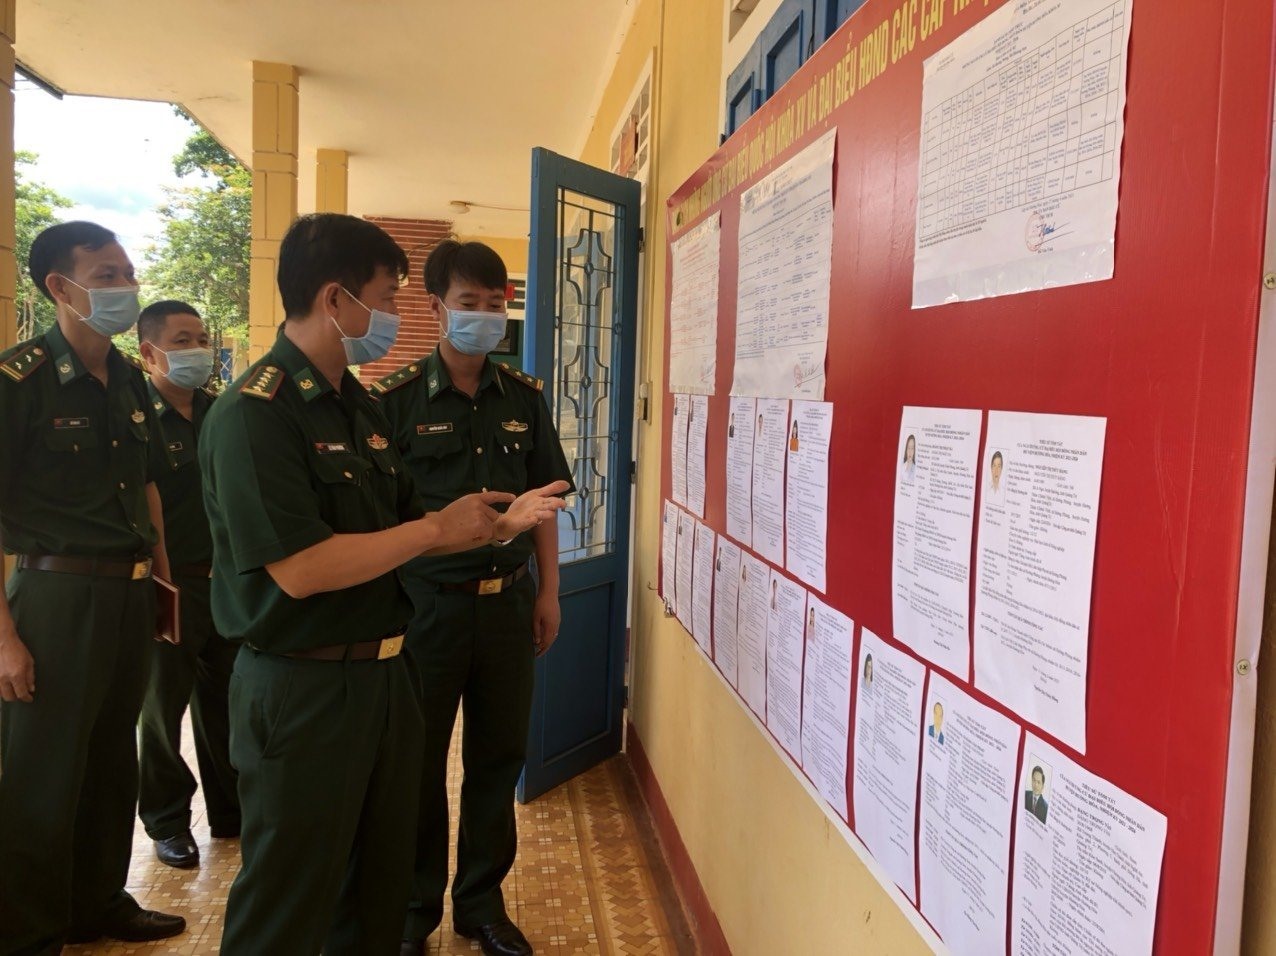 Đại tá Lê Văn Phương, Chỉ huy trưởng BĐBP Quảng Trị kiểm tra bảng niêm yết danh sách cử tri tại Đồn Biên phòng Hướng Phùng.